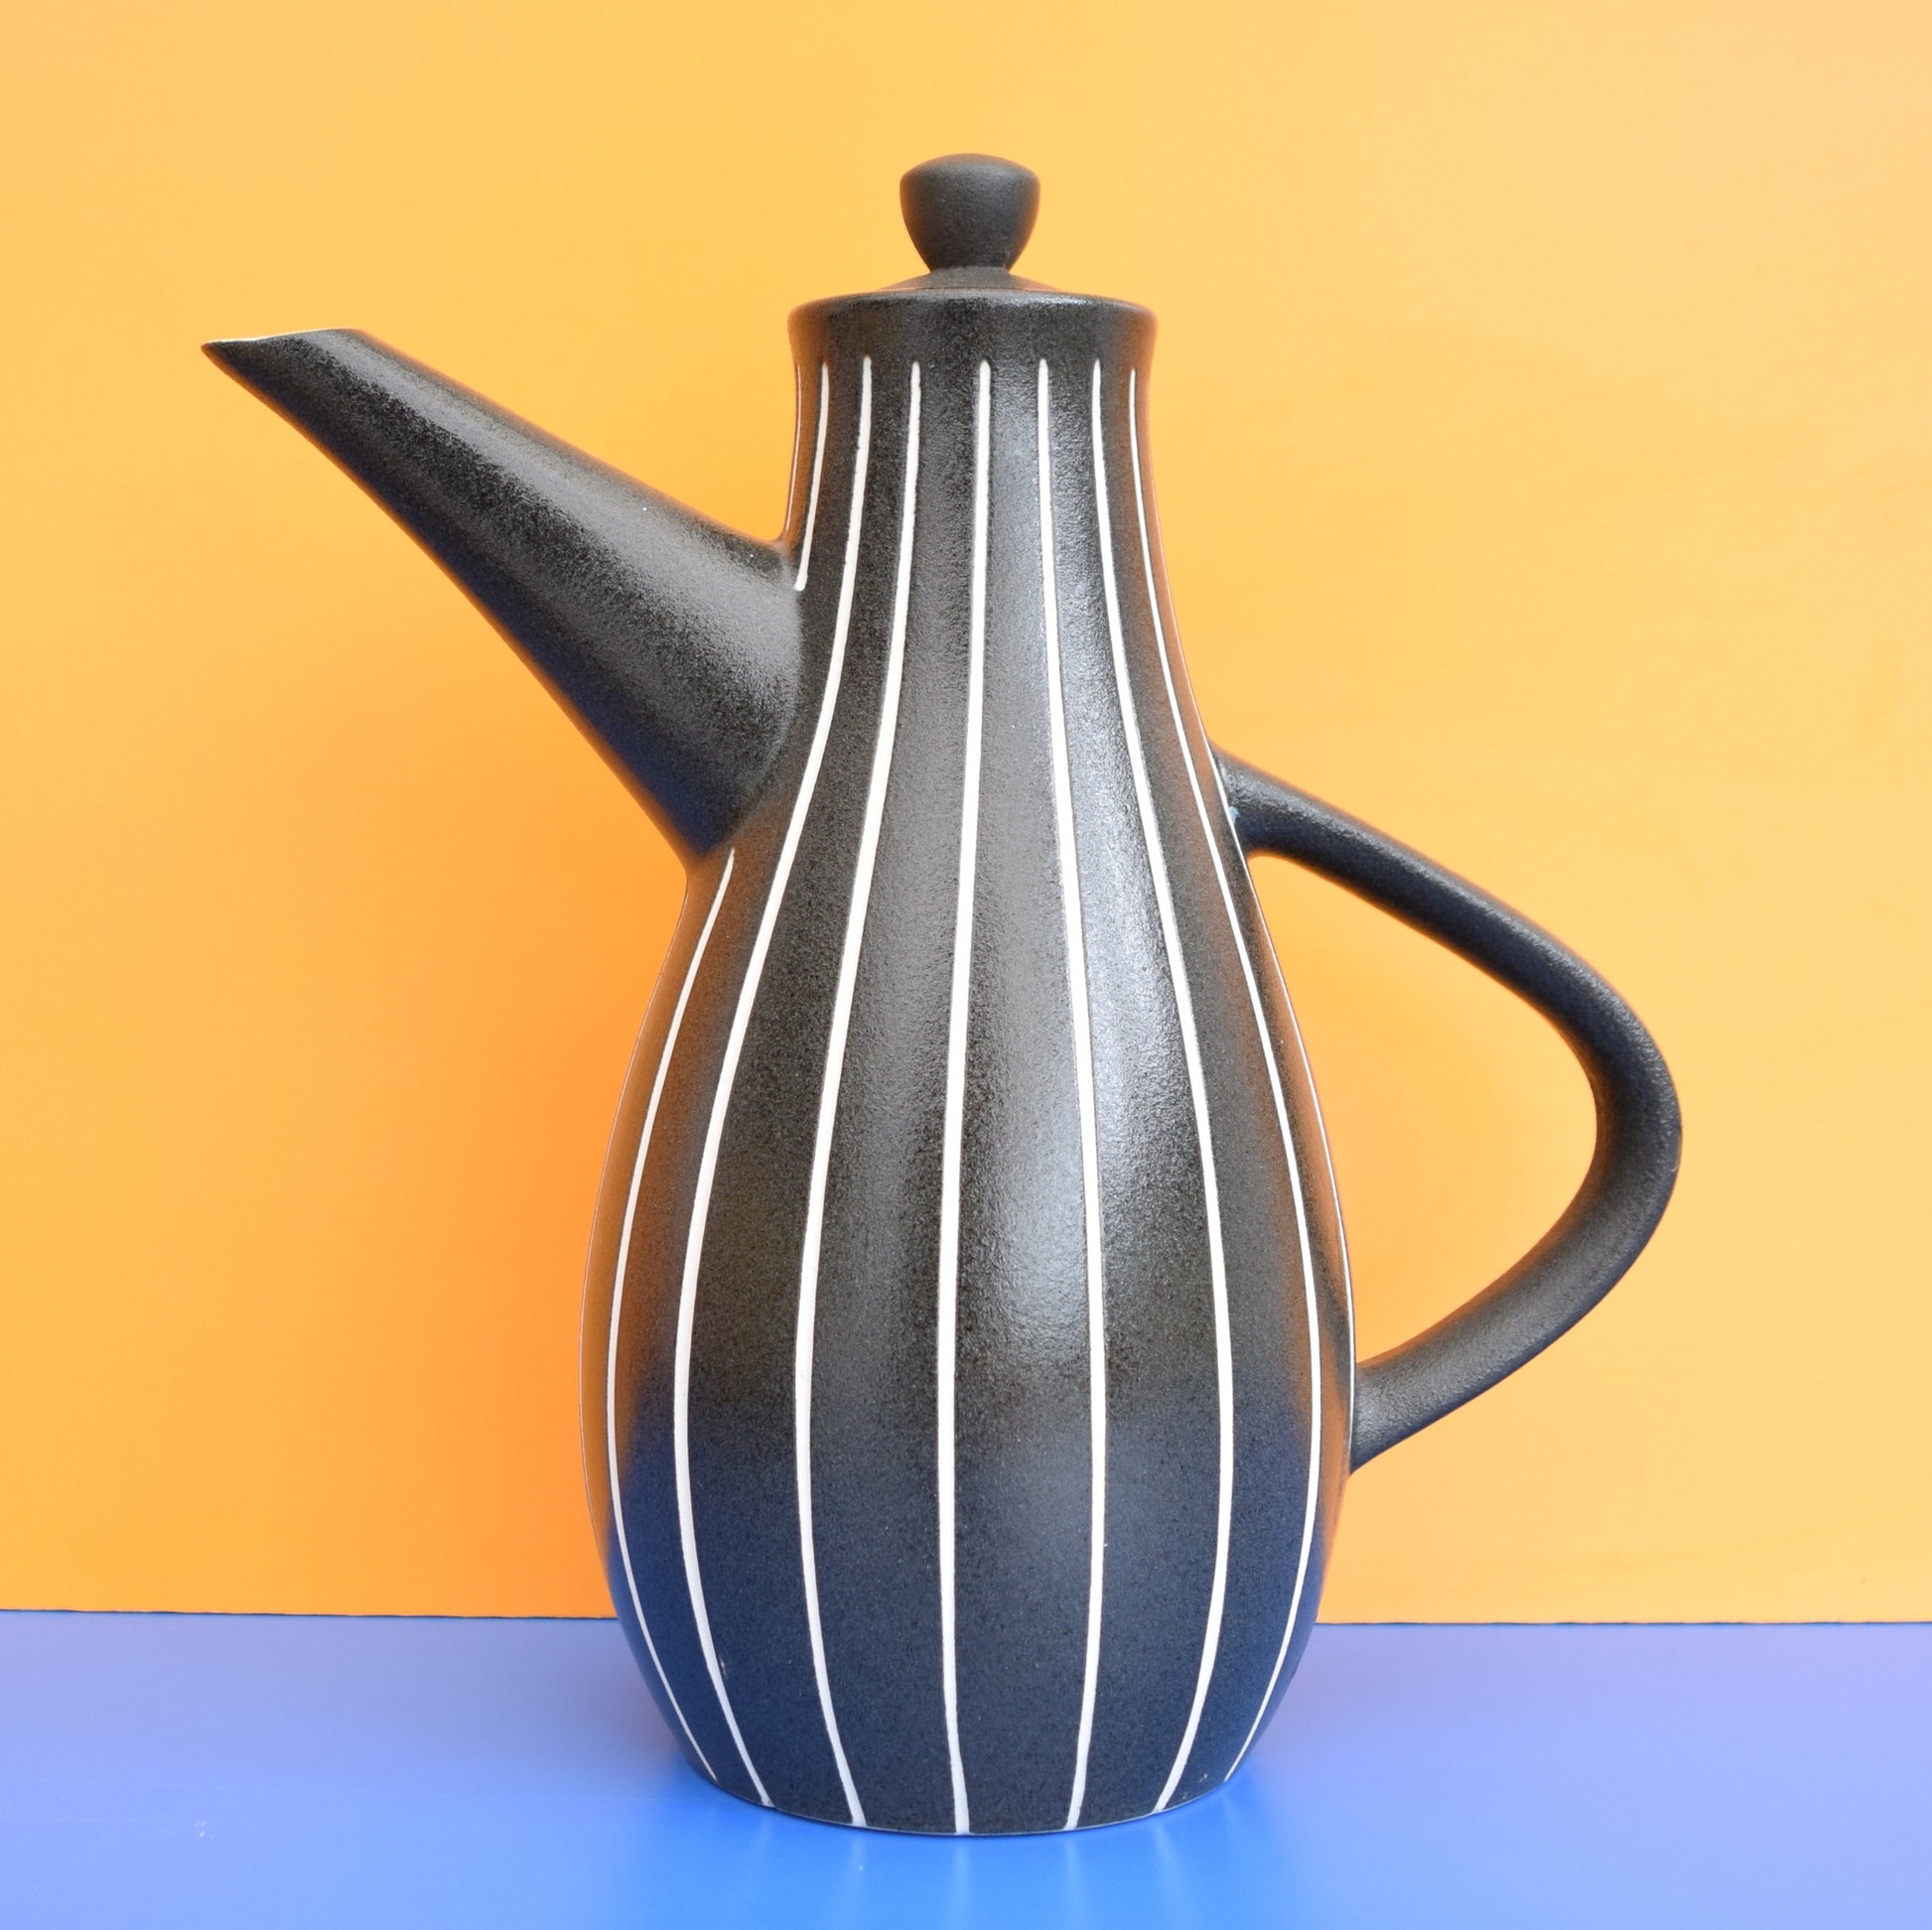 Vintage 1950s Rare Tigo-Ware Denby Coffee Pot, Tibor Reich Designed